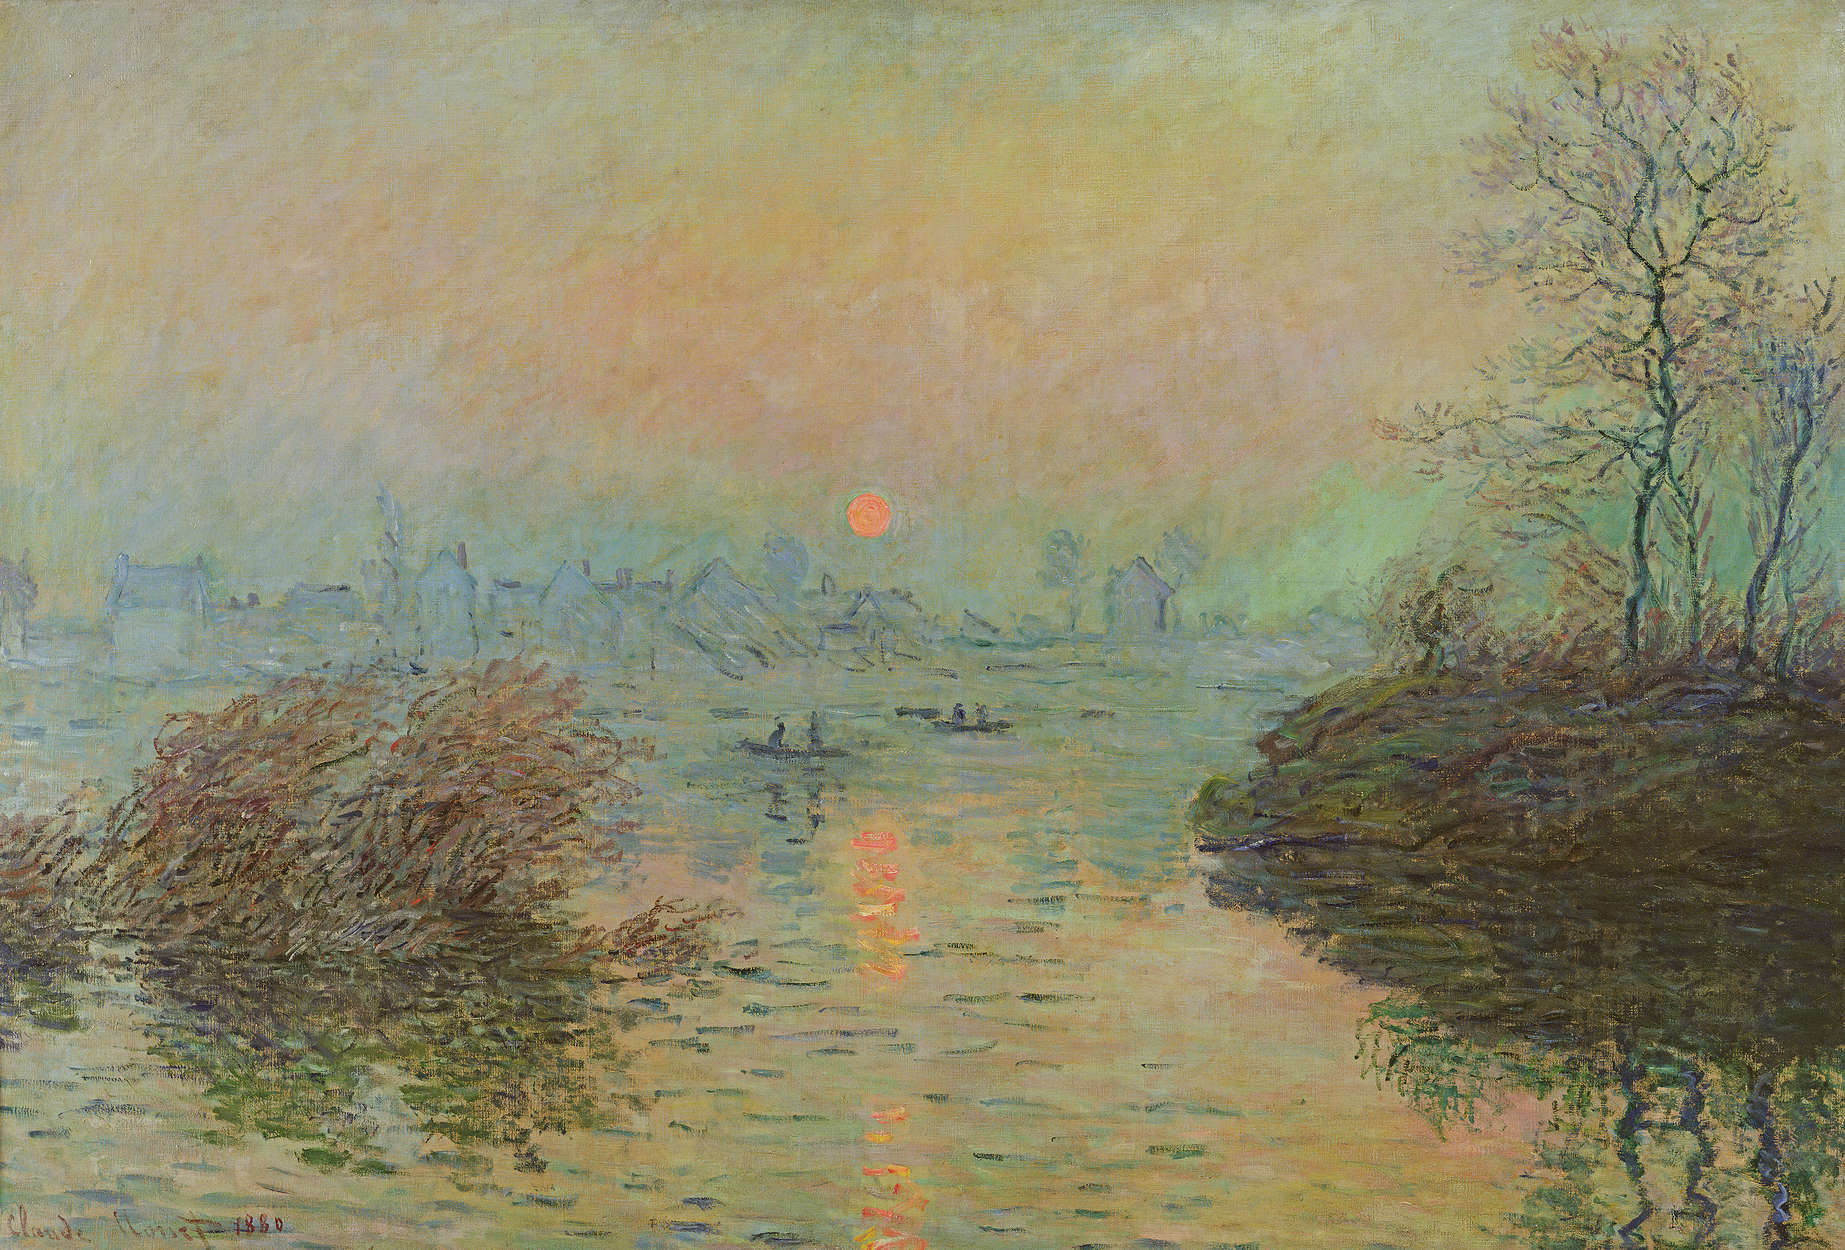             Fototapete "Sonnenuntergang über der Seine bei Lavacourt" von Claude Monet
        